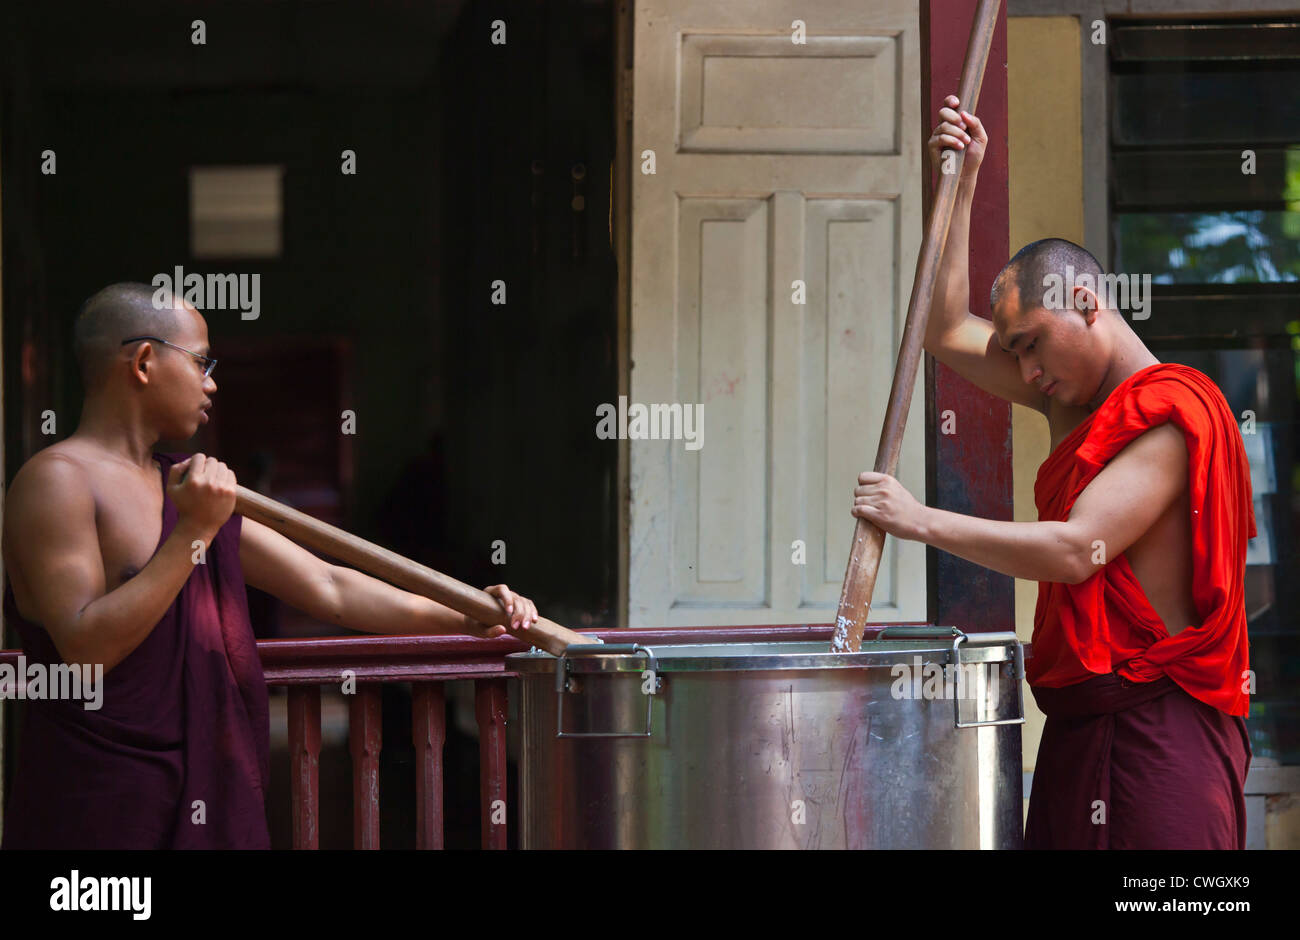 Les moines bouddhistes sont nourris chaque jour à 11 h au monastère MAHAGANDAYON - MANDALAY, MYANMAR Banque D'Images